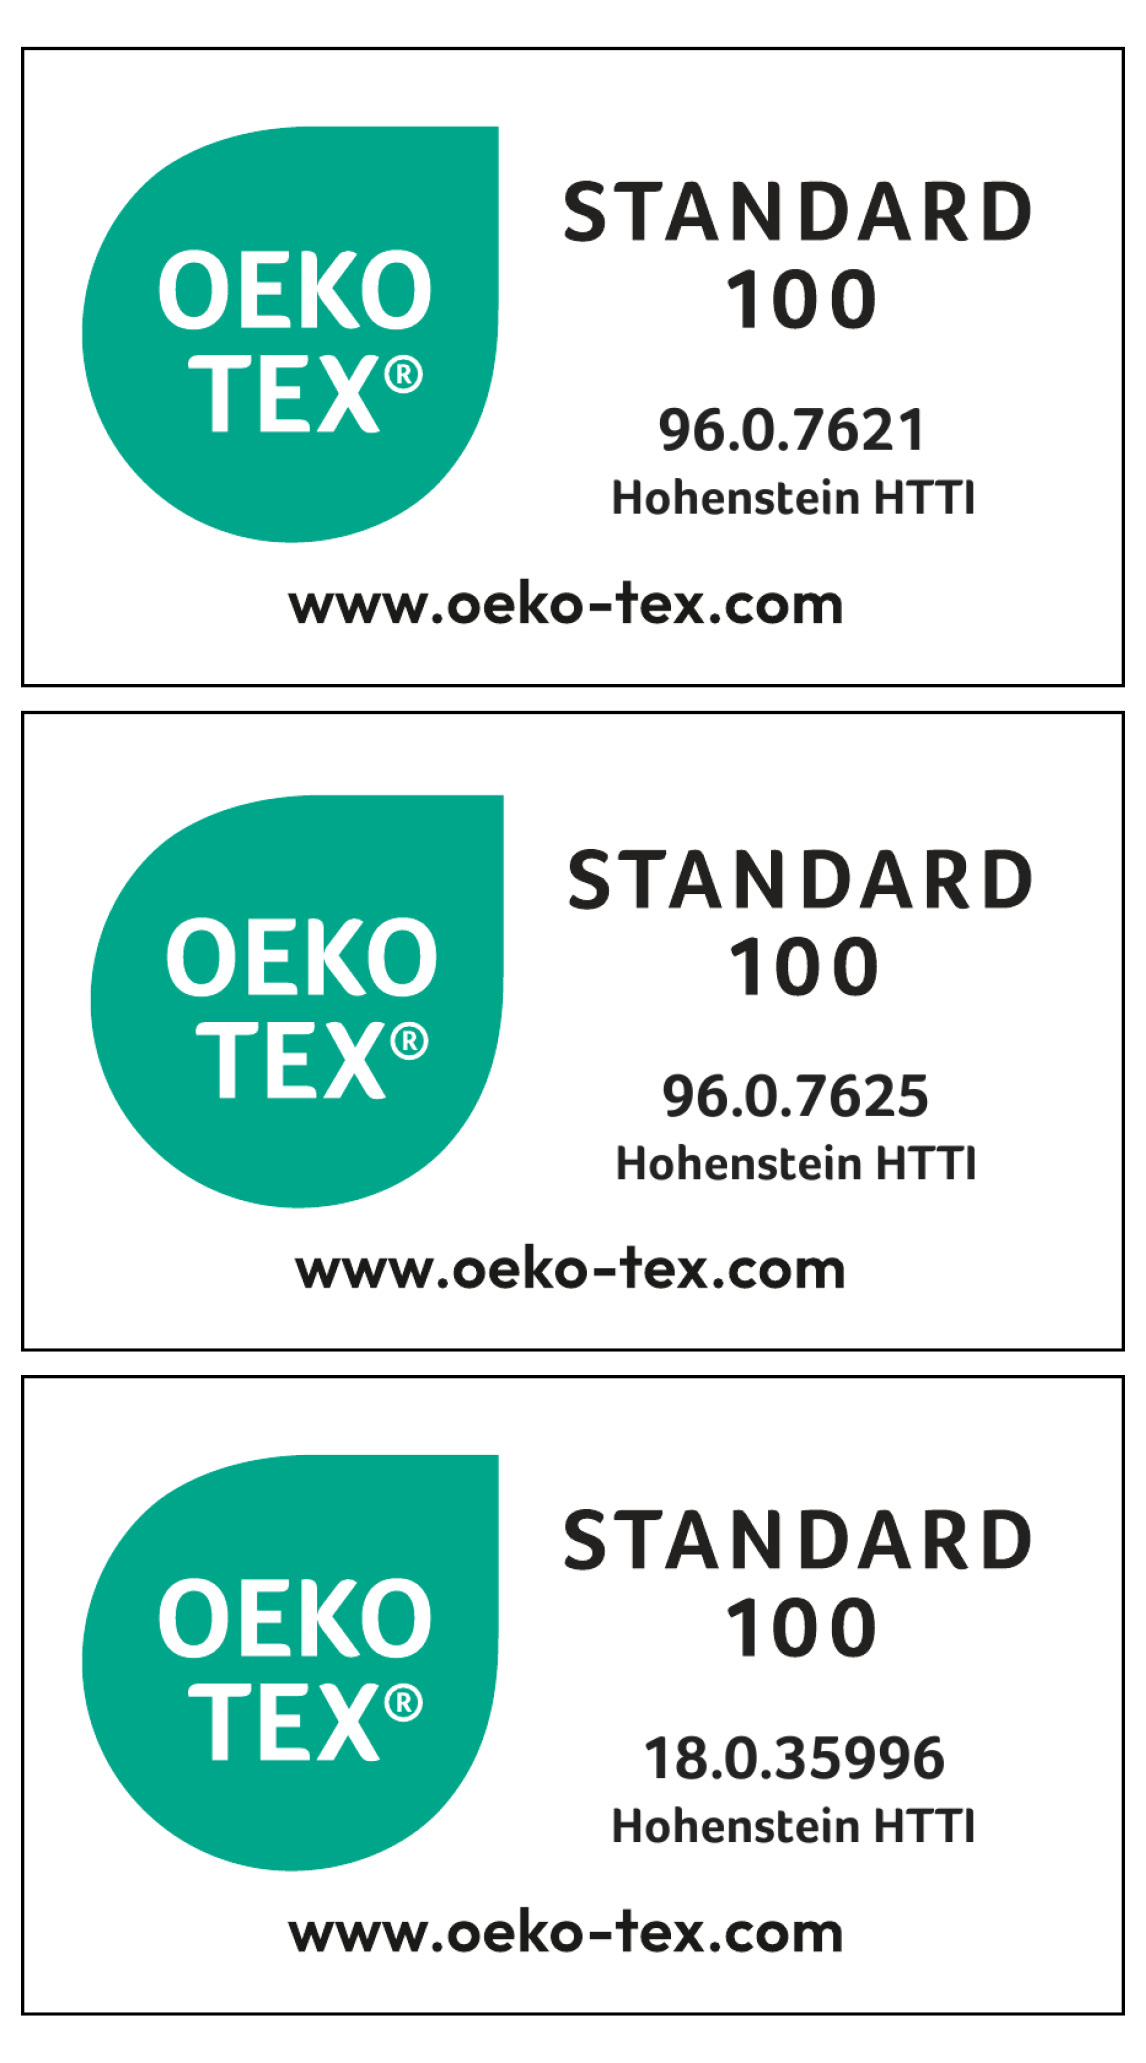 Oeko Tex Certification